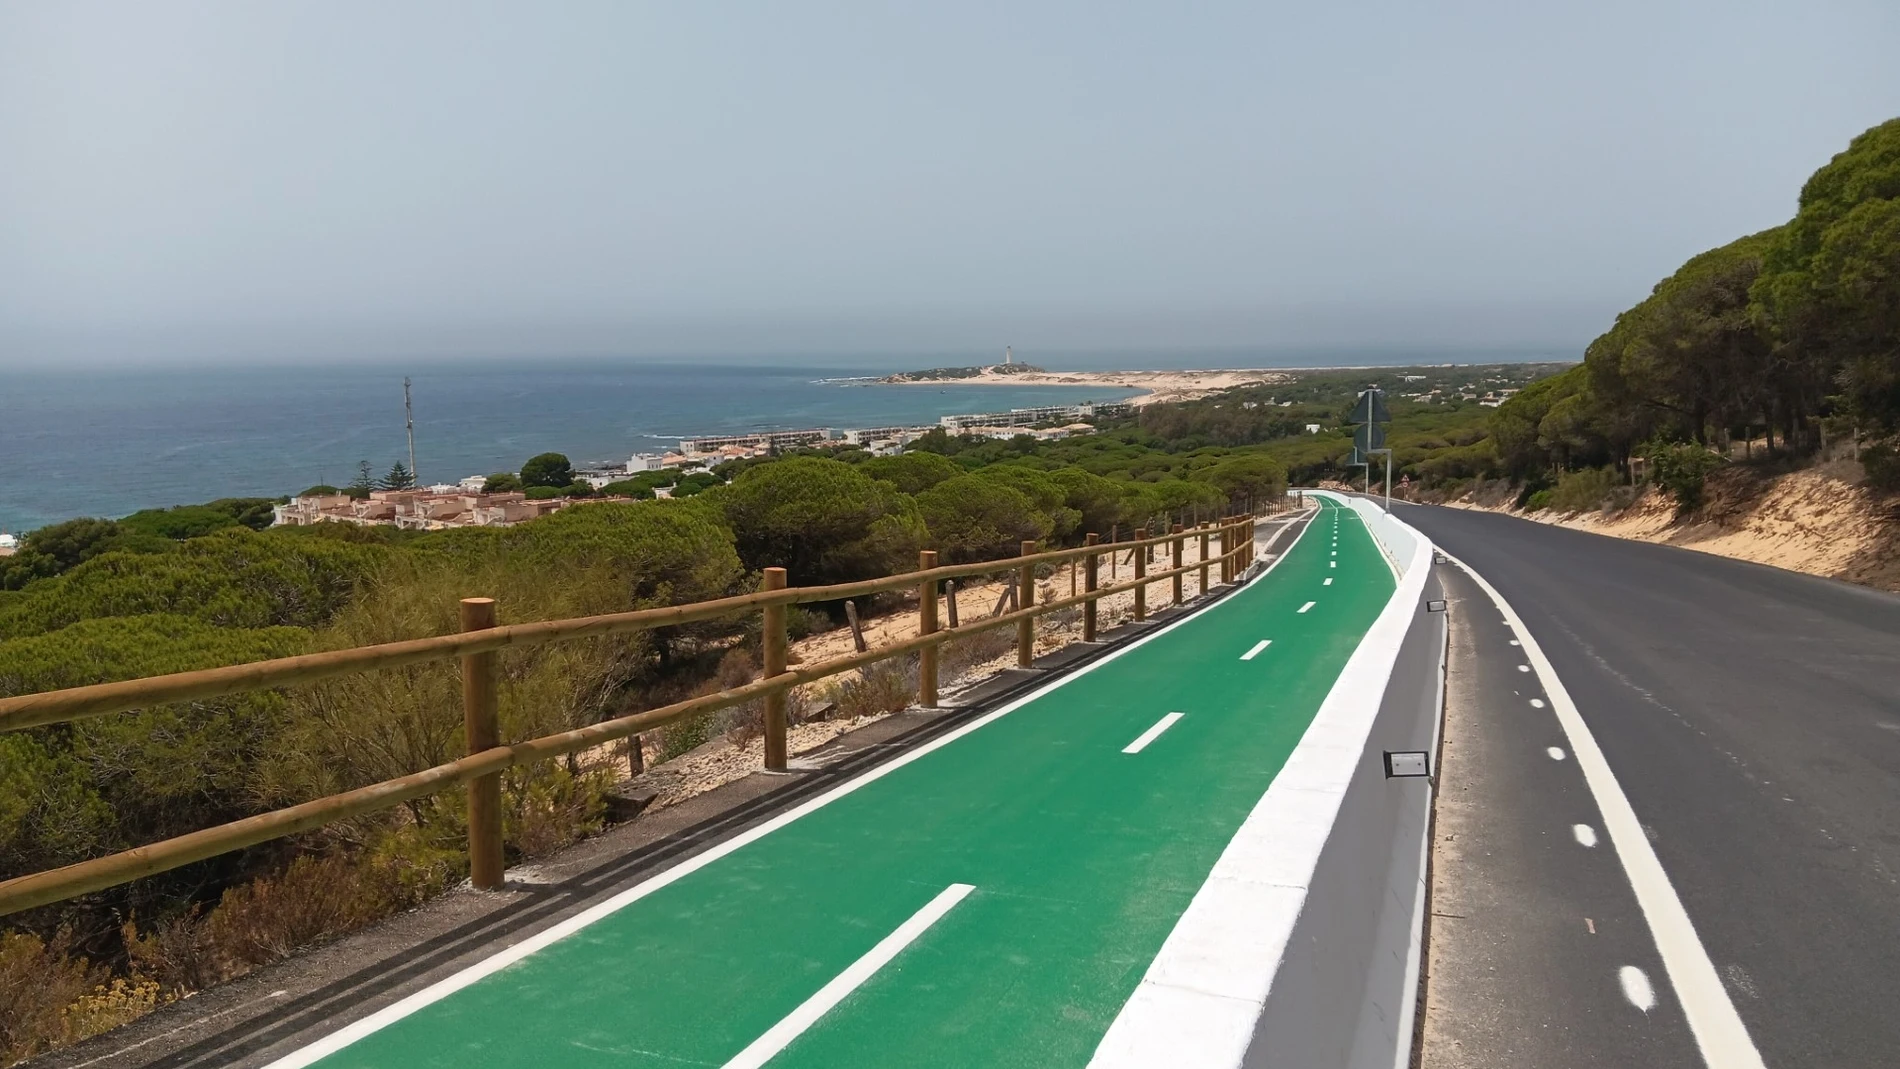 Ruta ciclista que conecta Barbate con Los Caños, en Cádiz, con fastuosas vistas del Parque Natural de La Breña